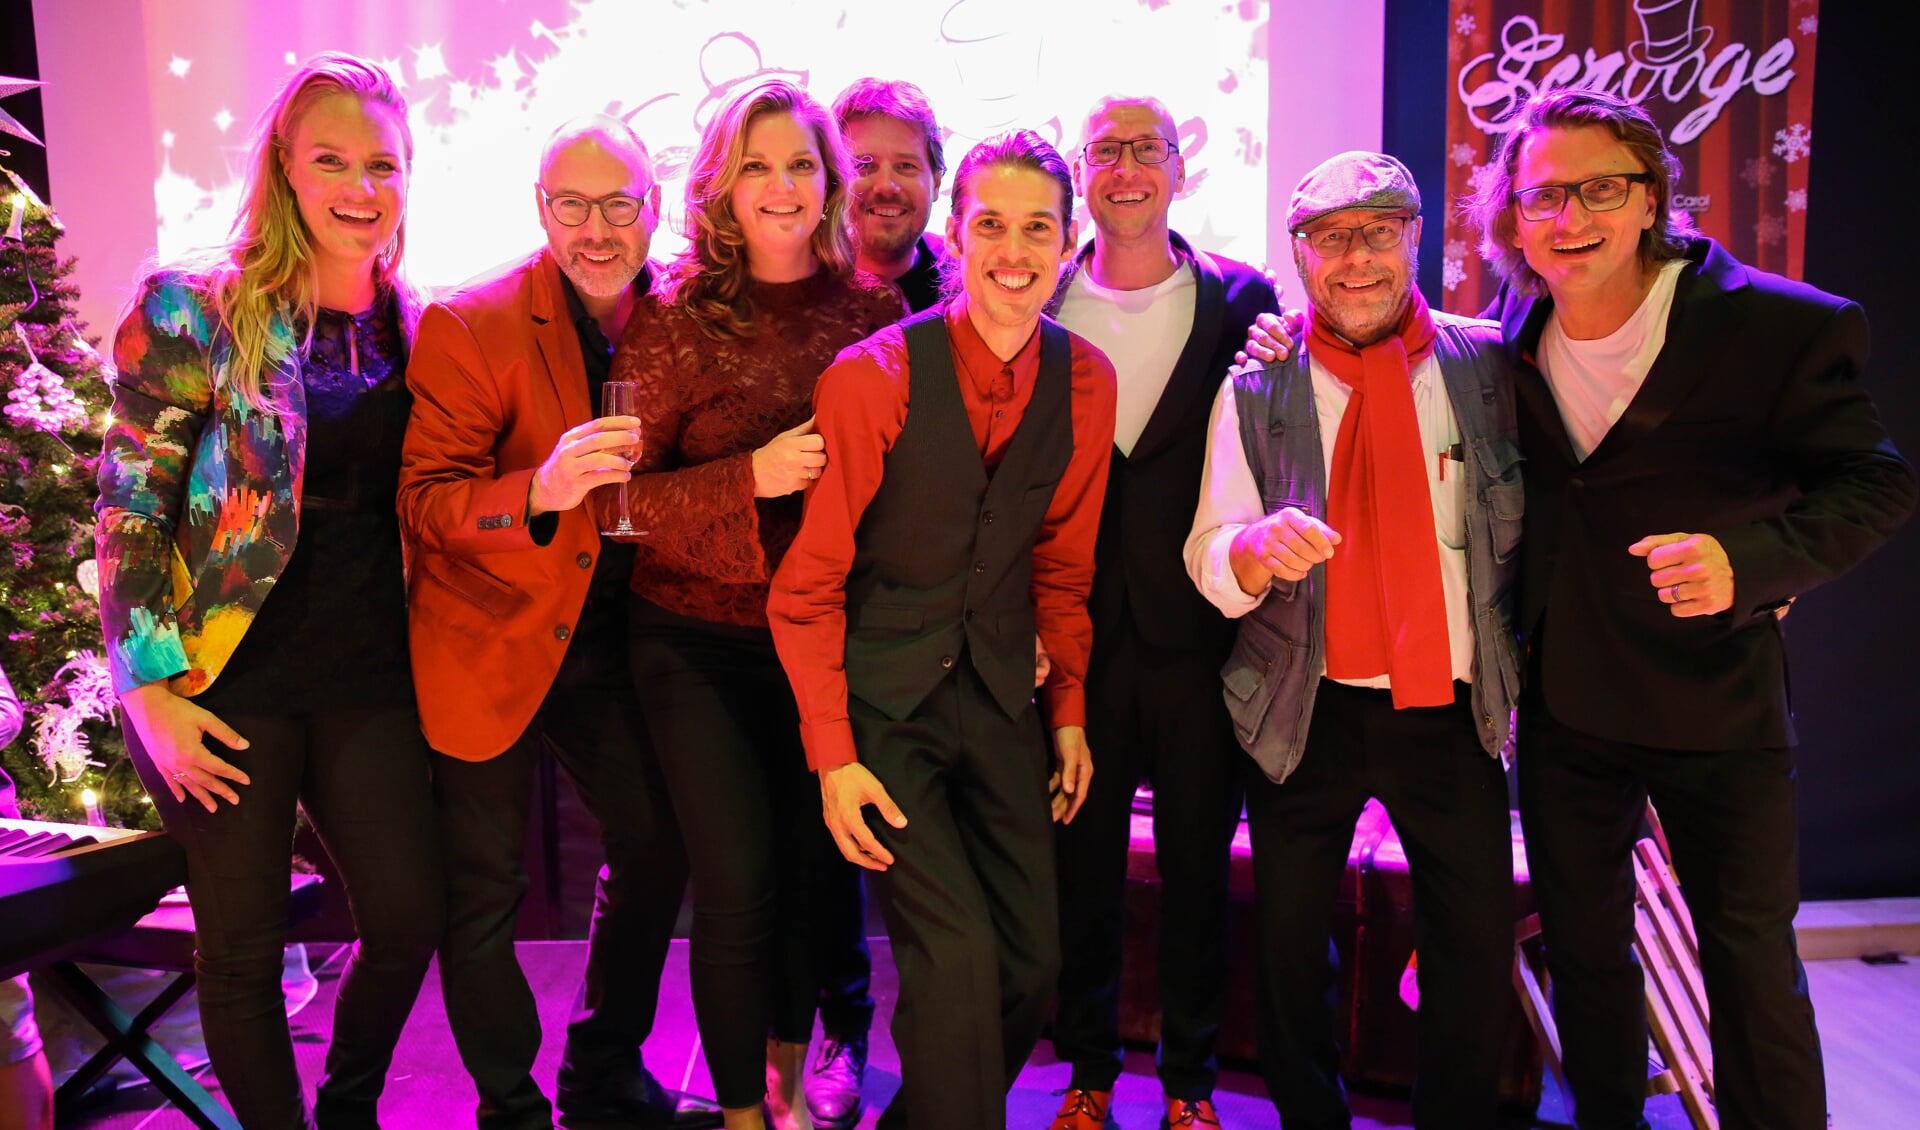 Het artistiek team van Superstar: Sophie van Hecke, Ruud Luttikhuizen, Majella van Ispelen, Gert Jan van der Kamp, Jerry Bloem, Maarten Elout, Olaf van Rijn en Oscar Koch. (Foto: Ietje Timmermans)